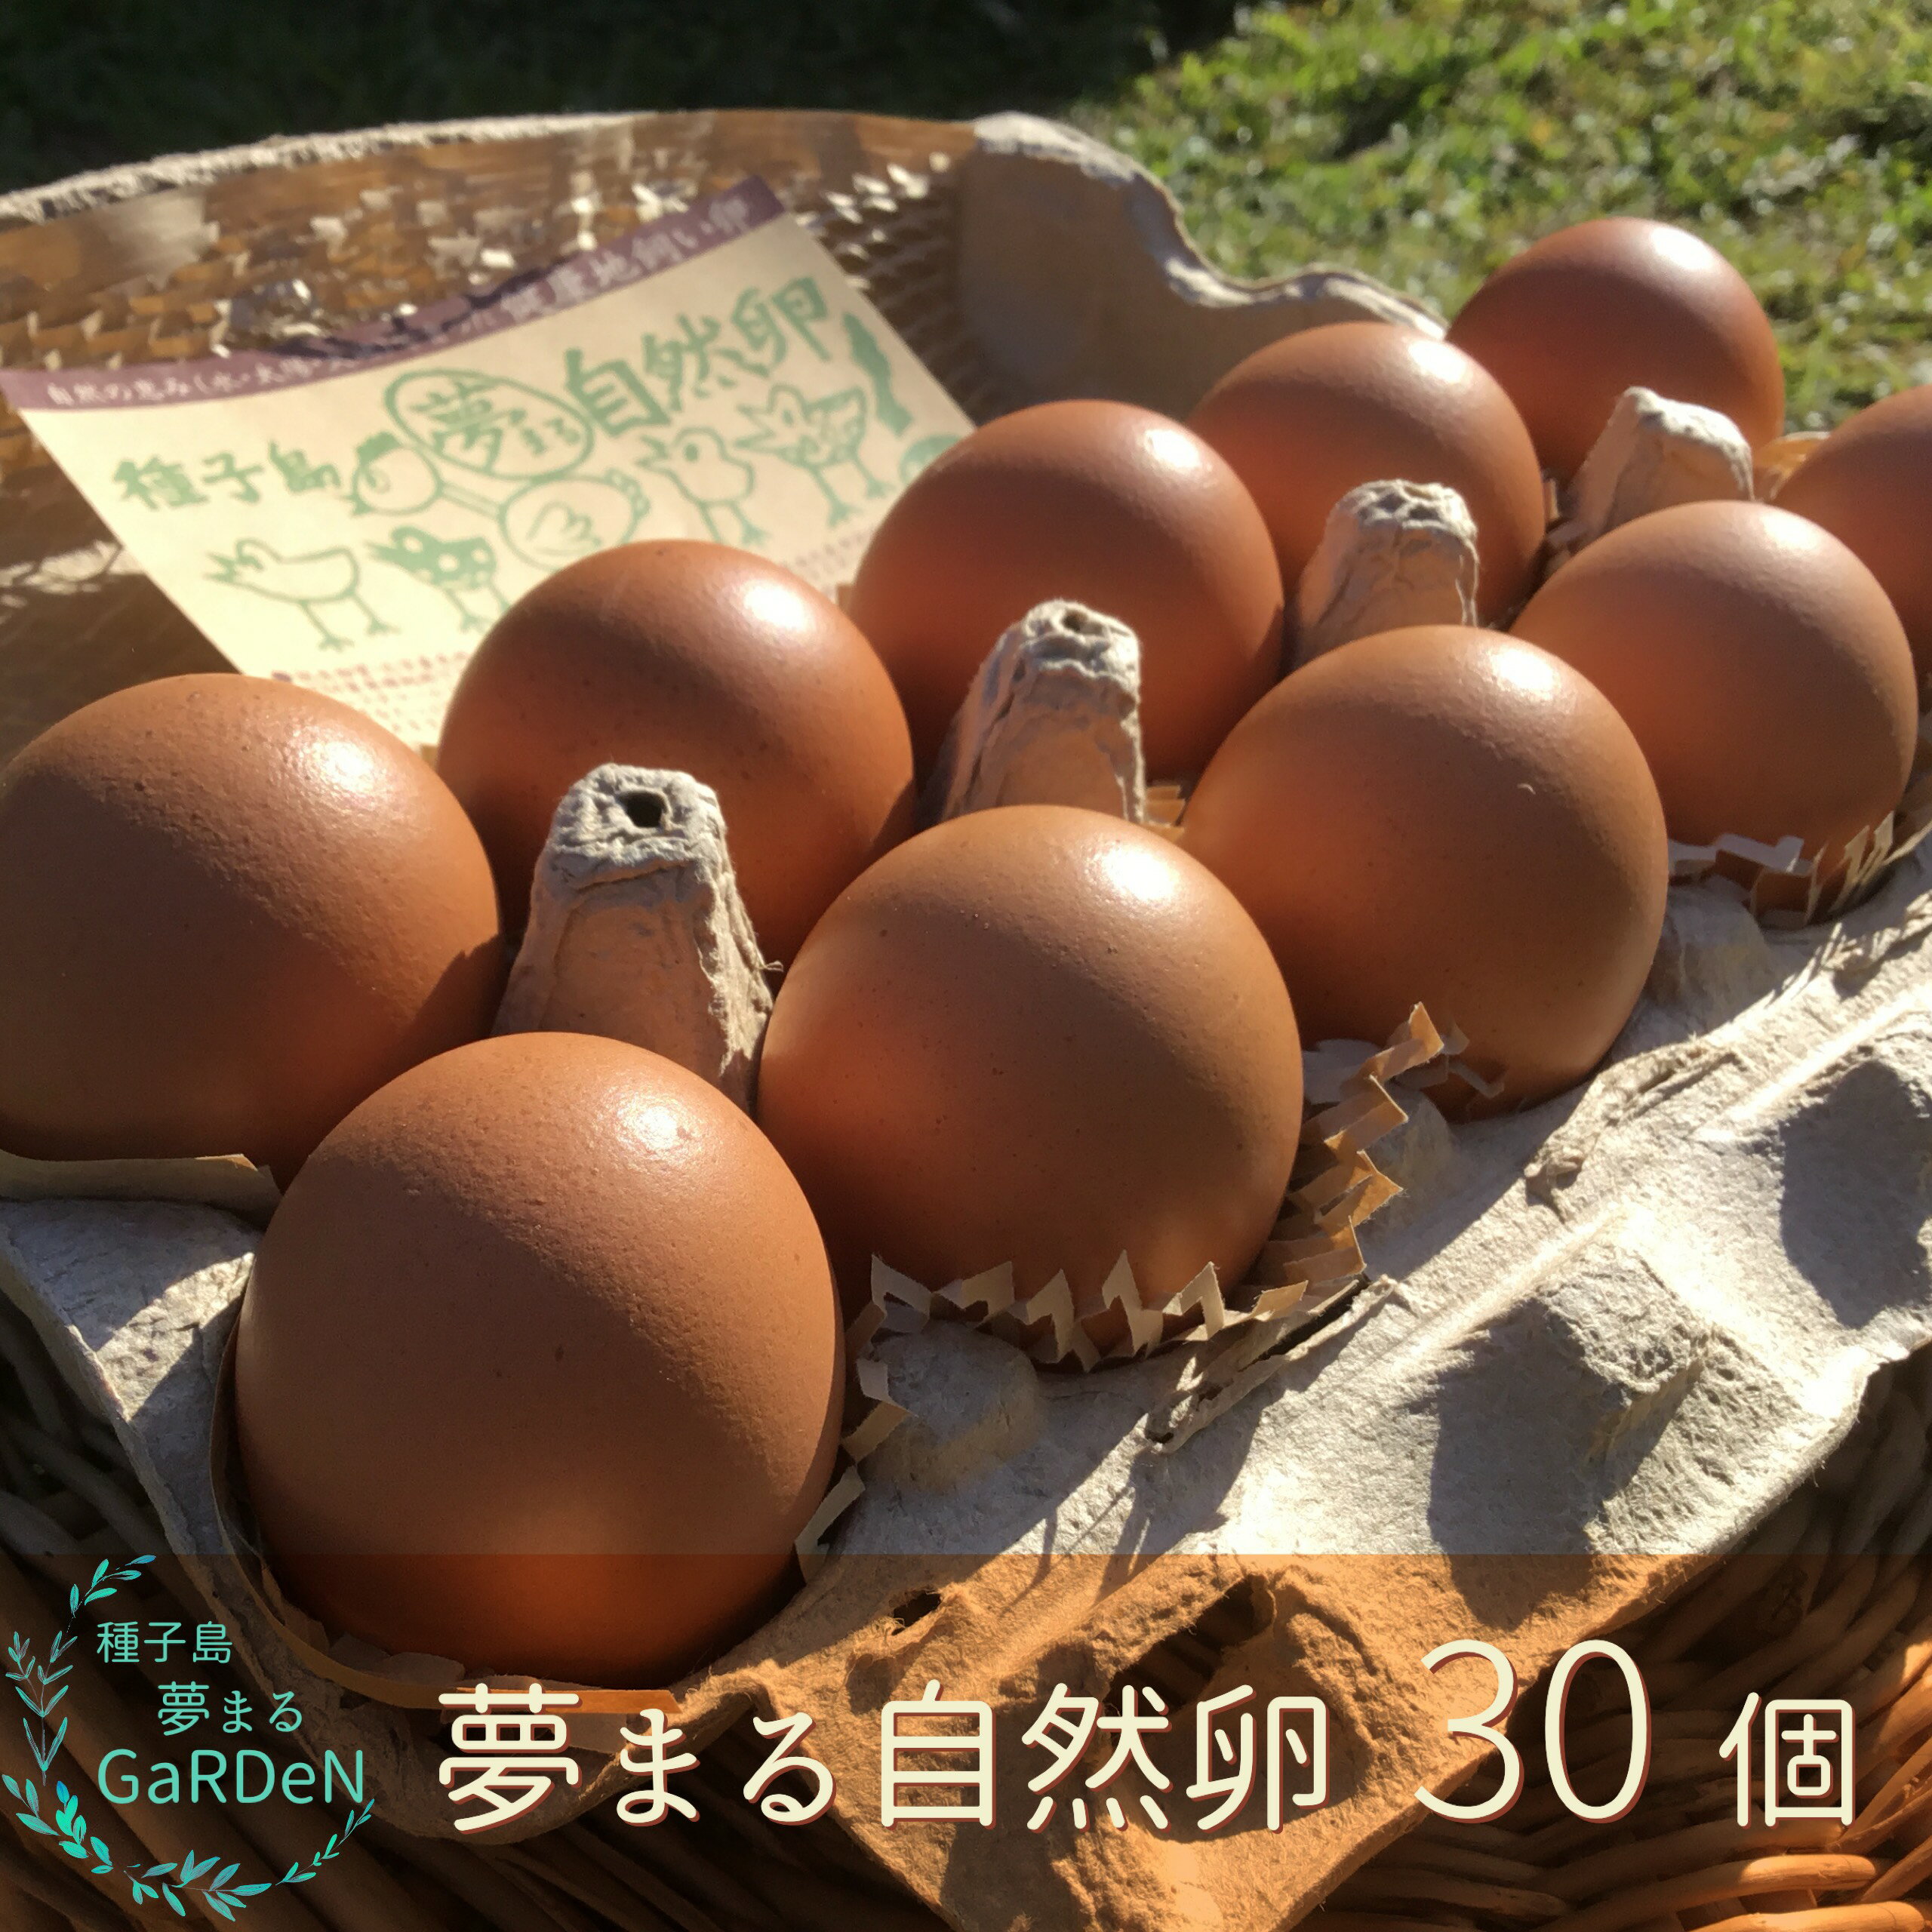 種子島 夢まるガーデン 平飼い 鶏 産みたて 卵 タマゴ 30個 (1パック10個入り×3) 種子島産 安納芋 含む 栄養 たっぷり 独自の飼料 育て方 環境に こだわり 新鮮 で おいしい 玉子 採れたて 生卵